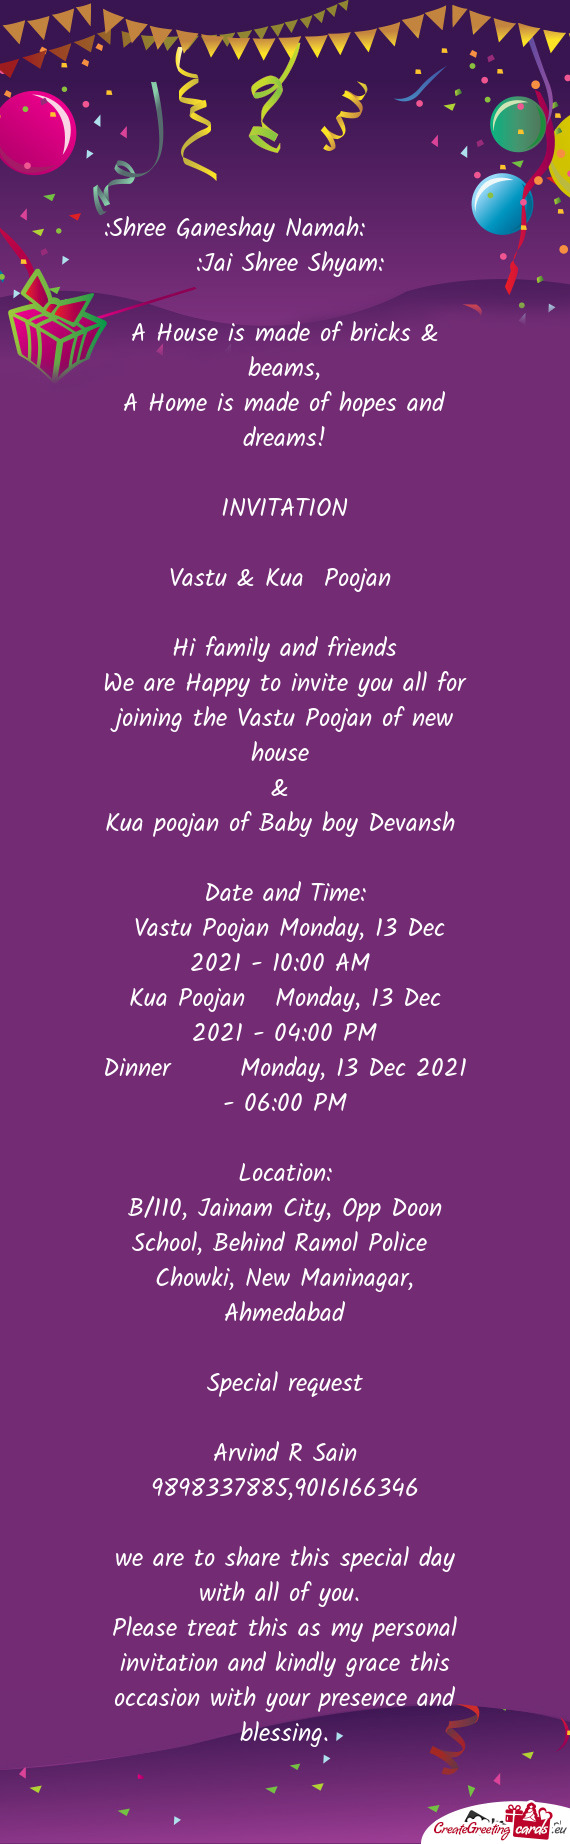 Vastu Poojan Monday, 13 Dec 2021 - 10:00 AM